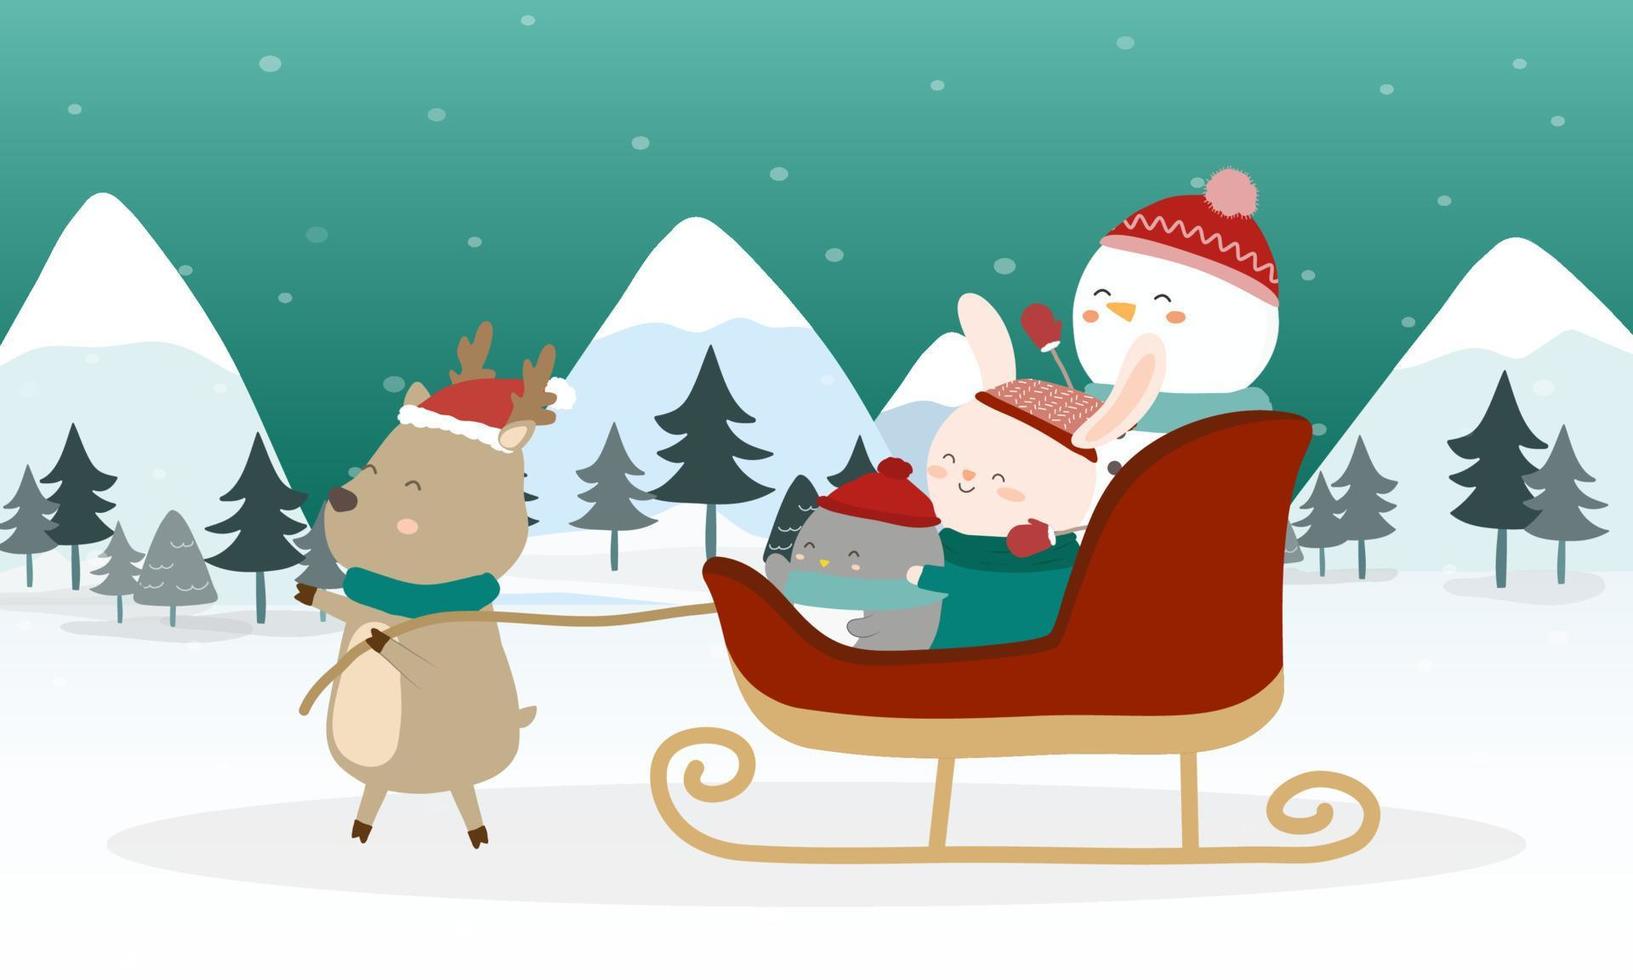 bonhomme de neige, lapin, pingouin avec traîneau de rennes dans l'élément de conception de scène d'hiver pour carte d'invitation, nouvel an, noël. vecteur